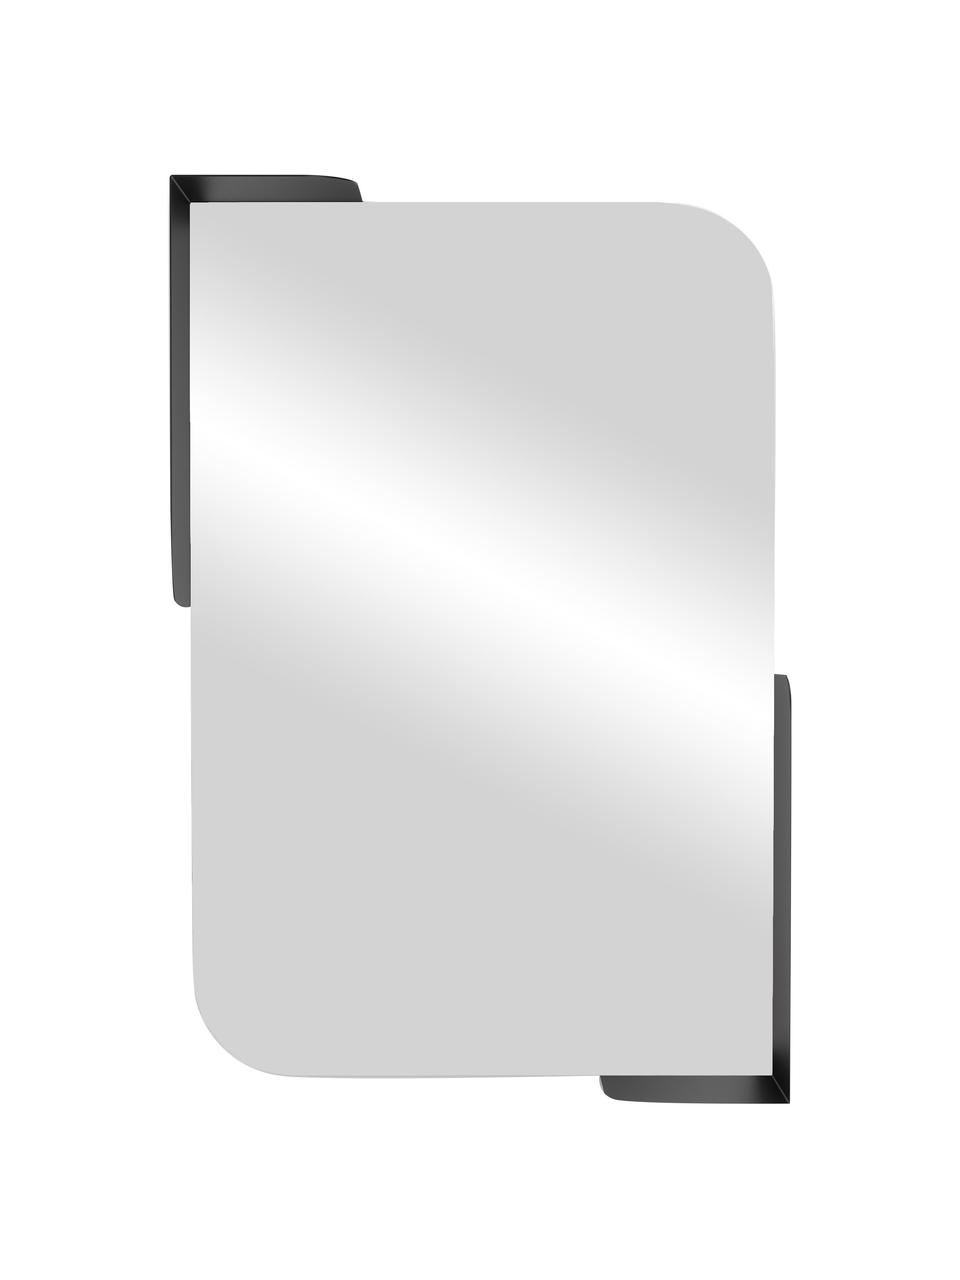 Wandspiegel Alcove mit Ablageflächen, Spiegelfläche: Spiegelglas, Schwarz, B 52 x H 77 cm